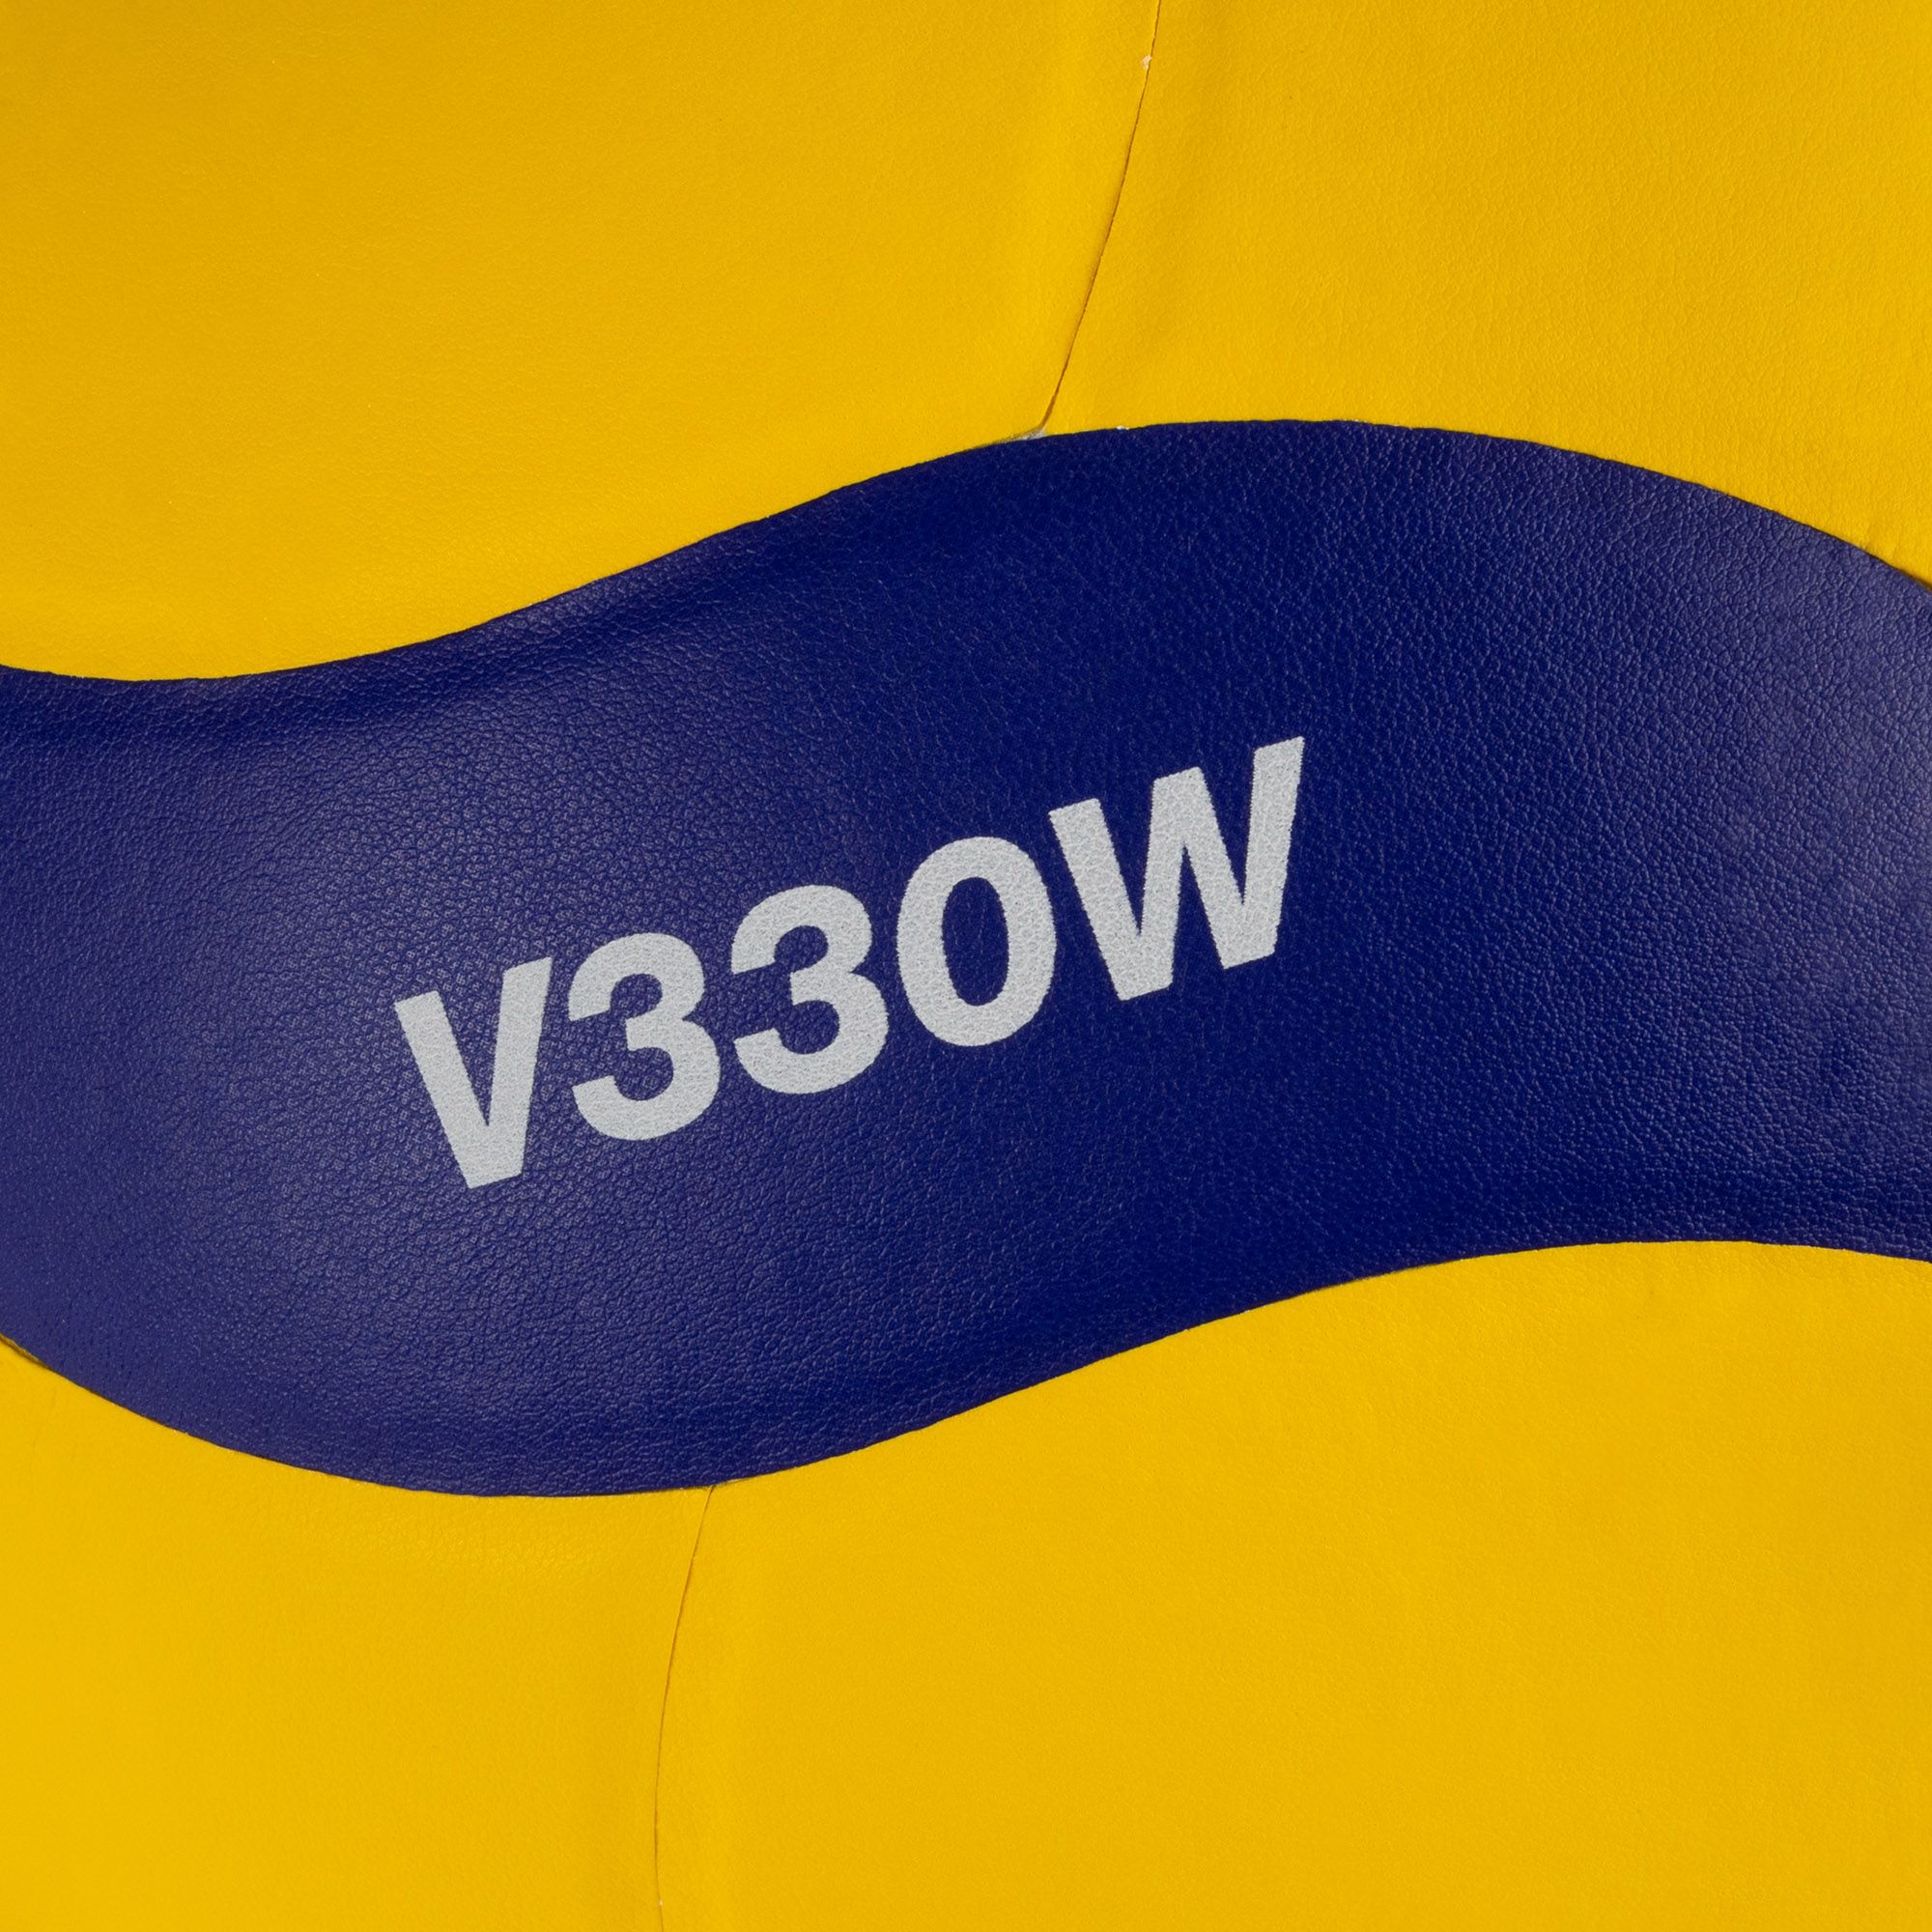 Piłka do siatkówki Mikasa V330W yellow/blue rozmiar 5 zdjęcie nr 4